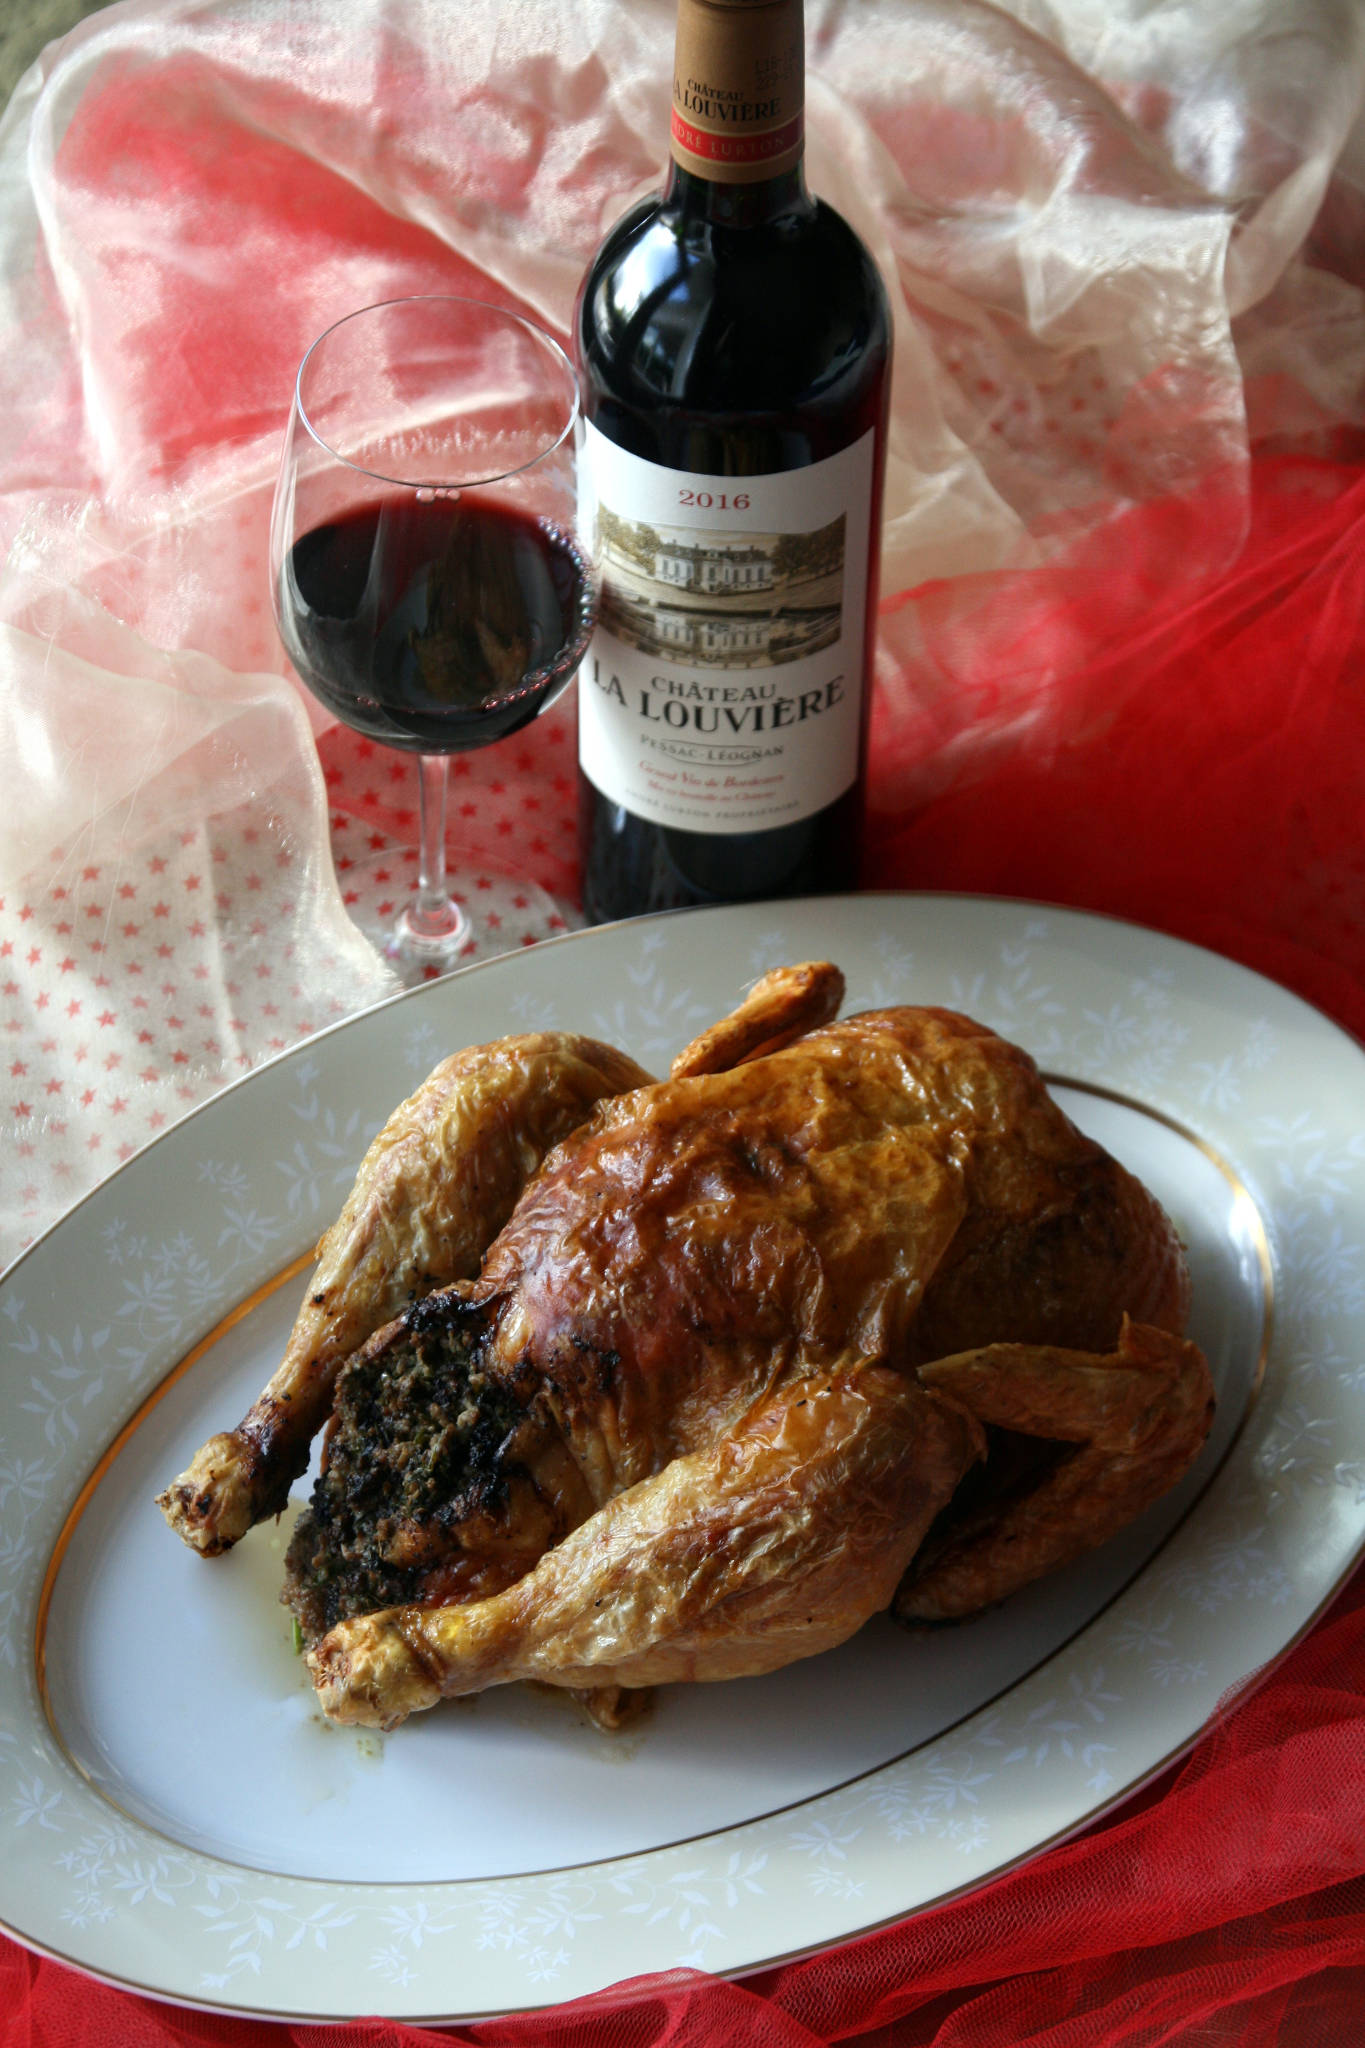 Poularde farcie au foie gras, Château La Louvière rouge 2016